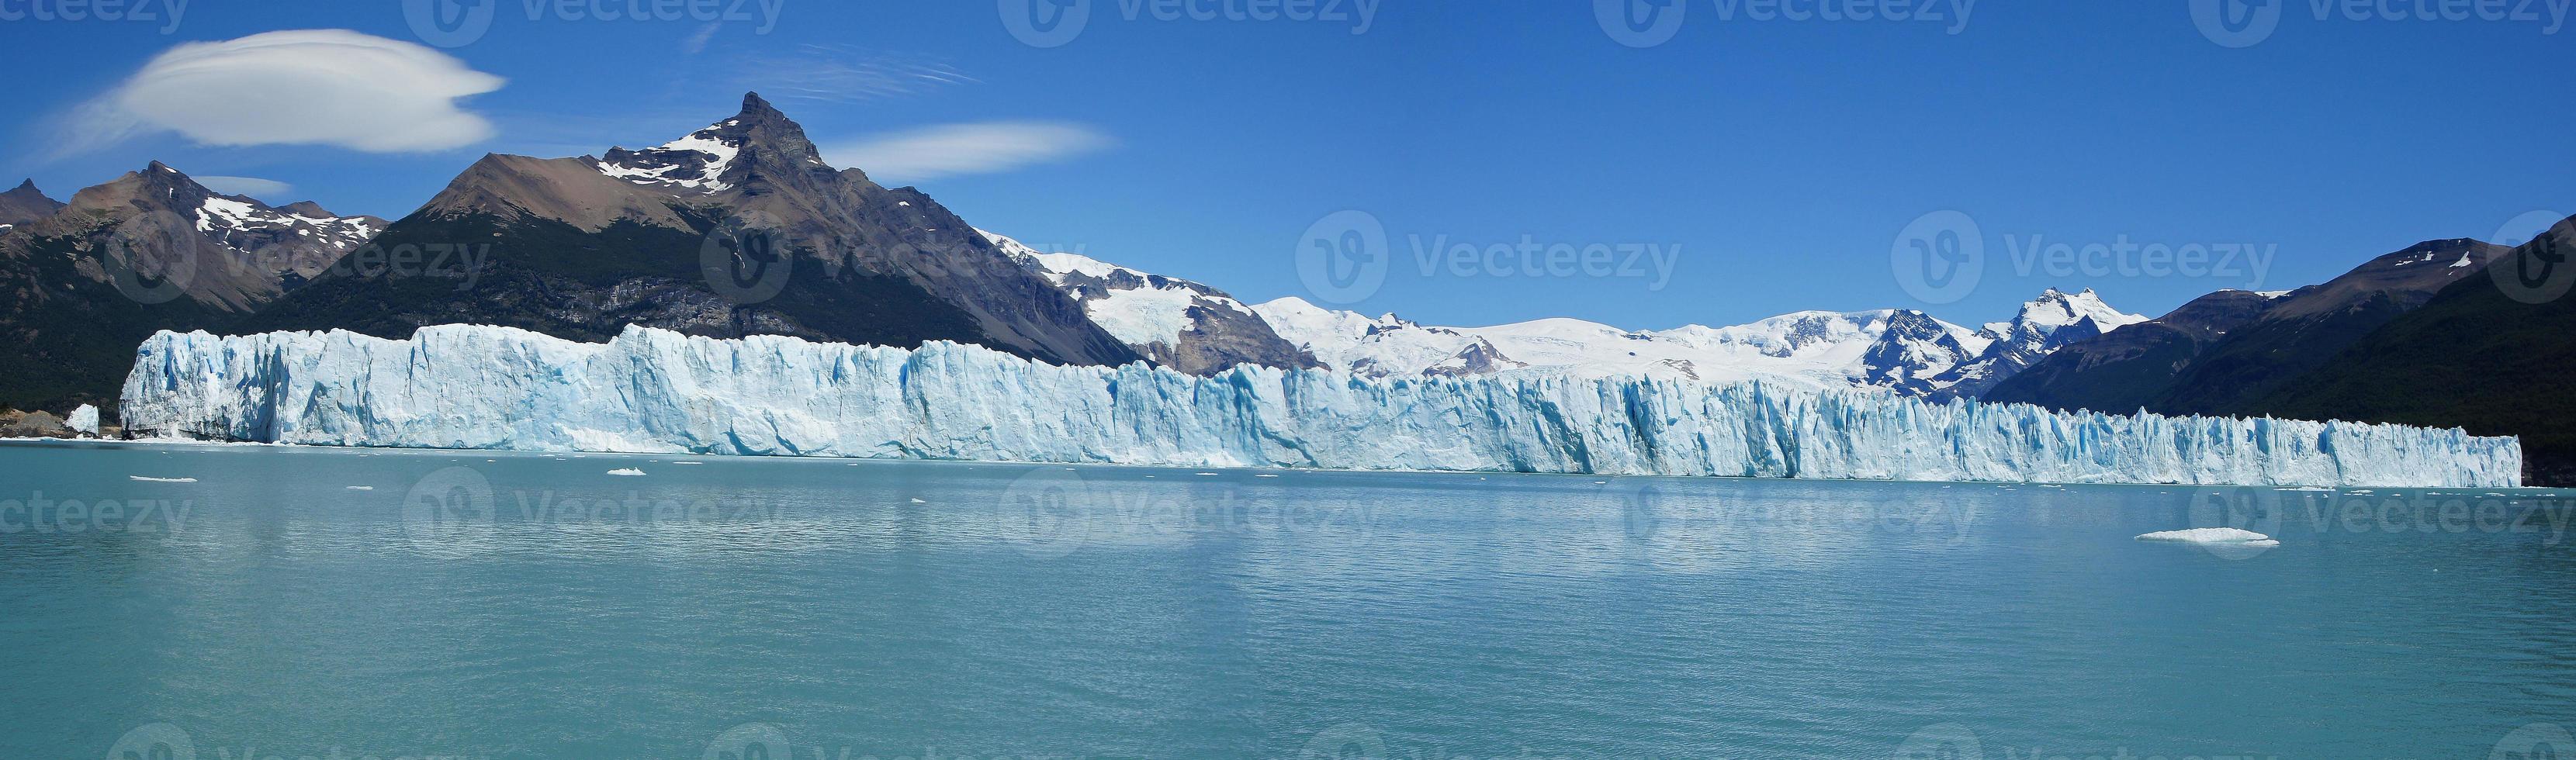 Perito-Moreno-Gletscher, Argentinien foto